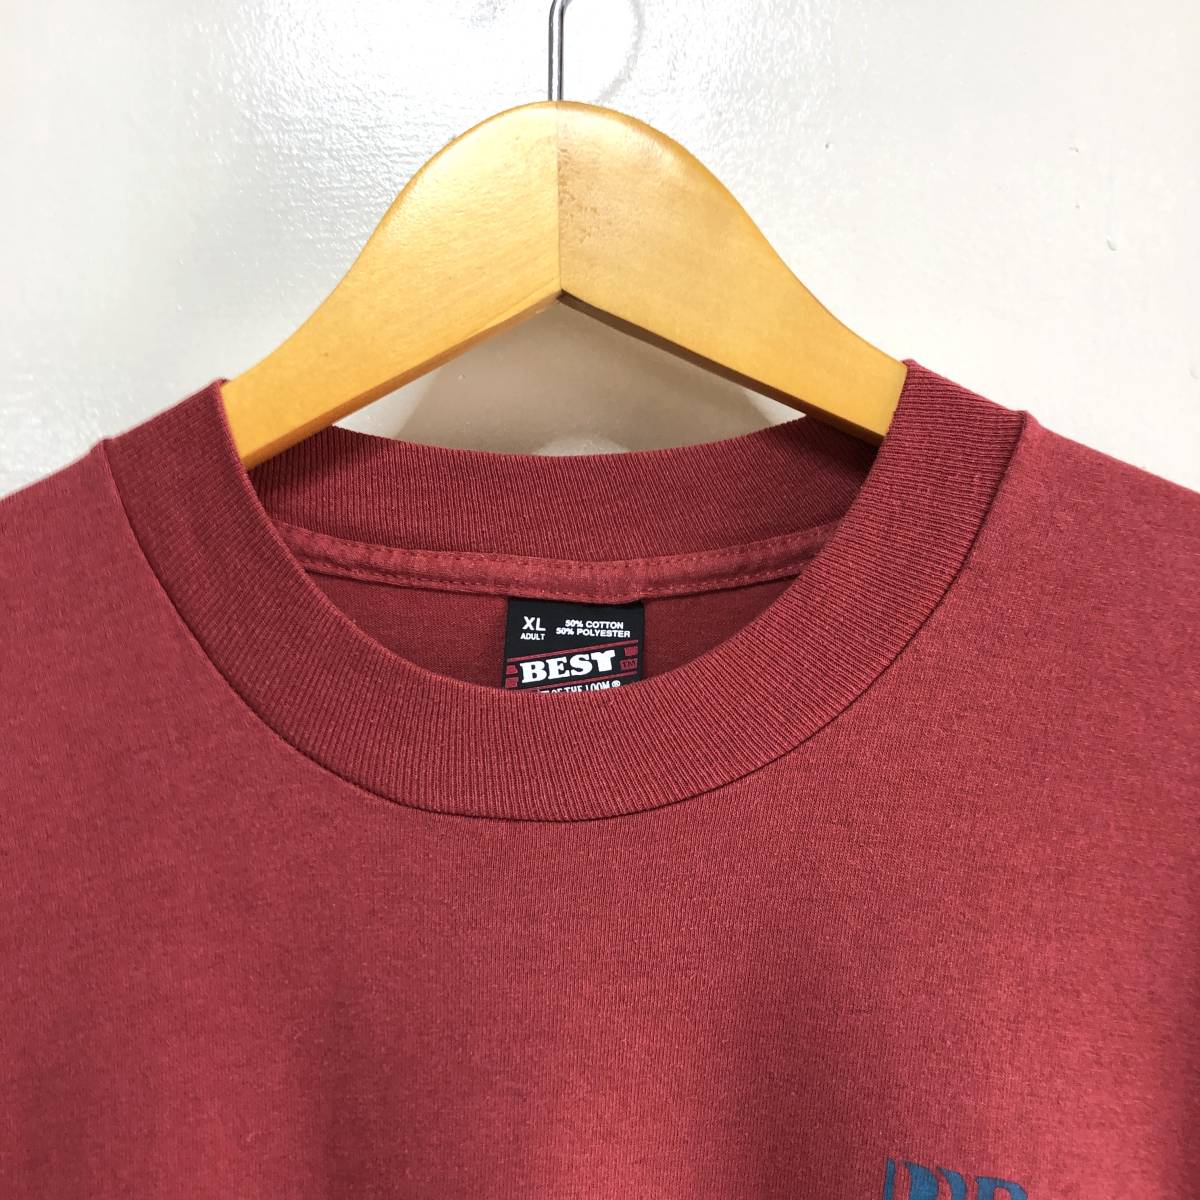 90年代 90S USA製 ヴィンテージ Tシャツ 古着 プリント シングルステッチ フルーツオブザルーム